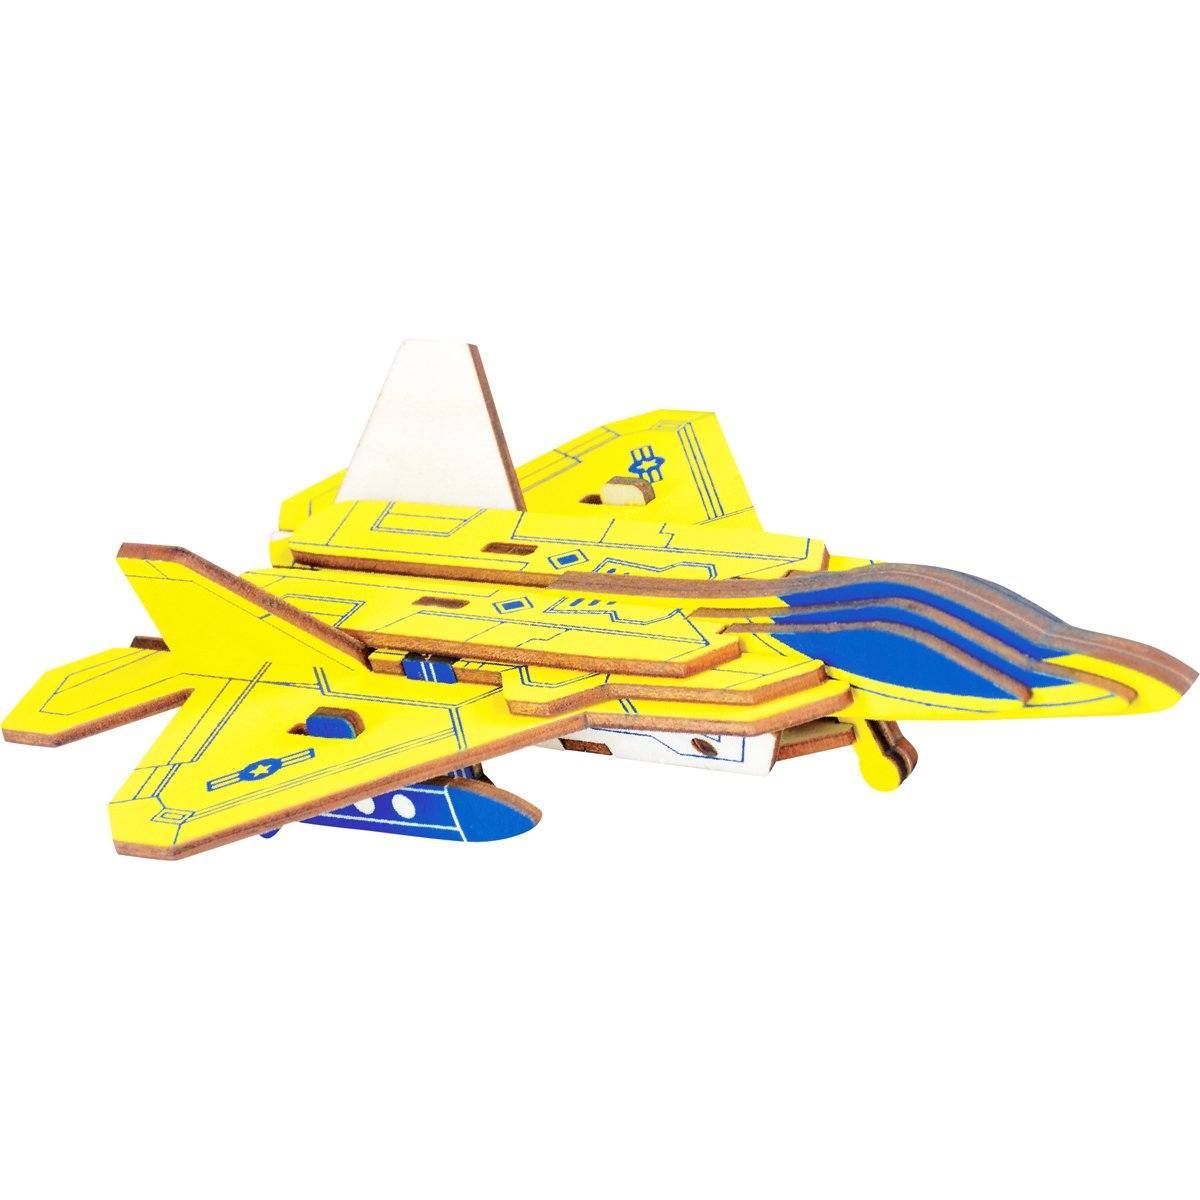 Pilot Toys F-22 Raptor 3D Puzzle